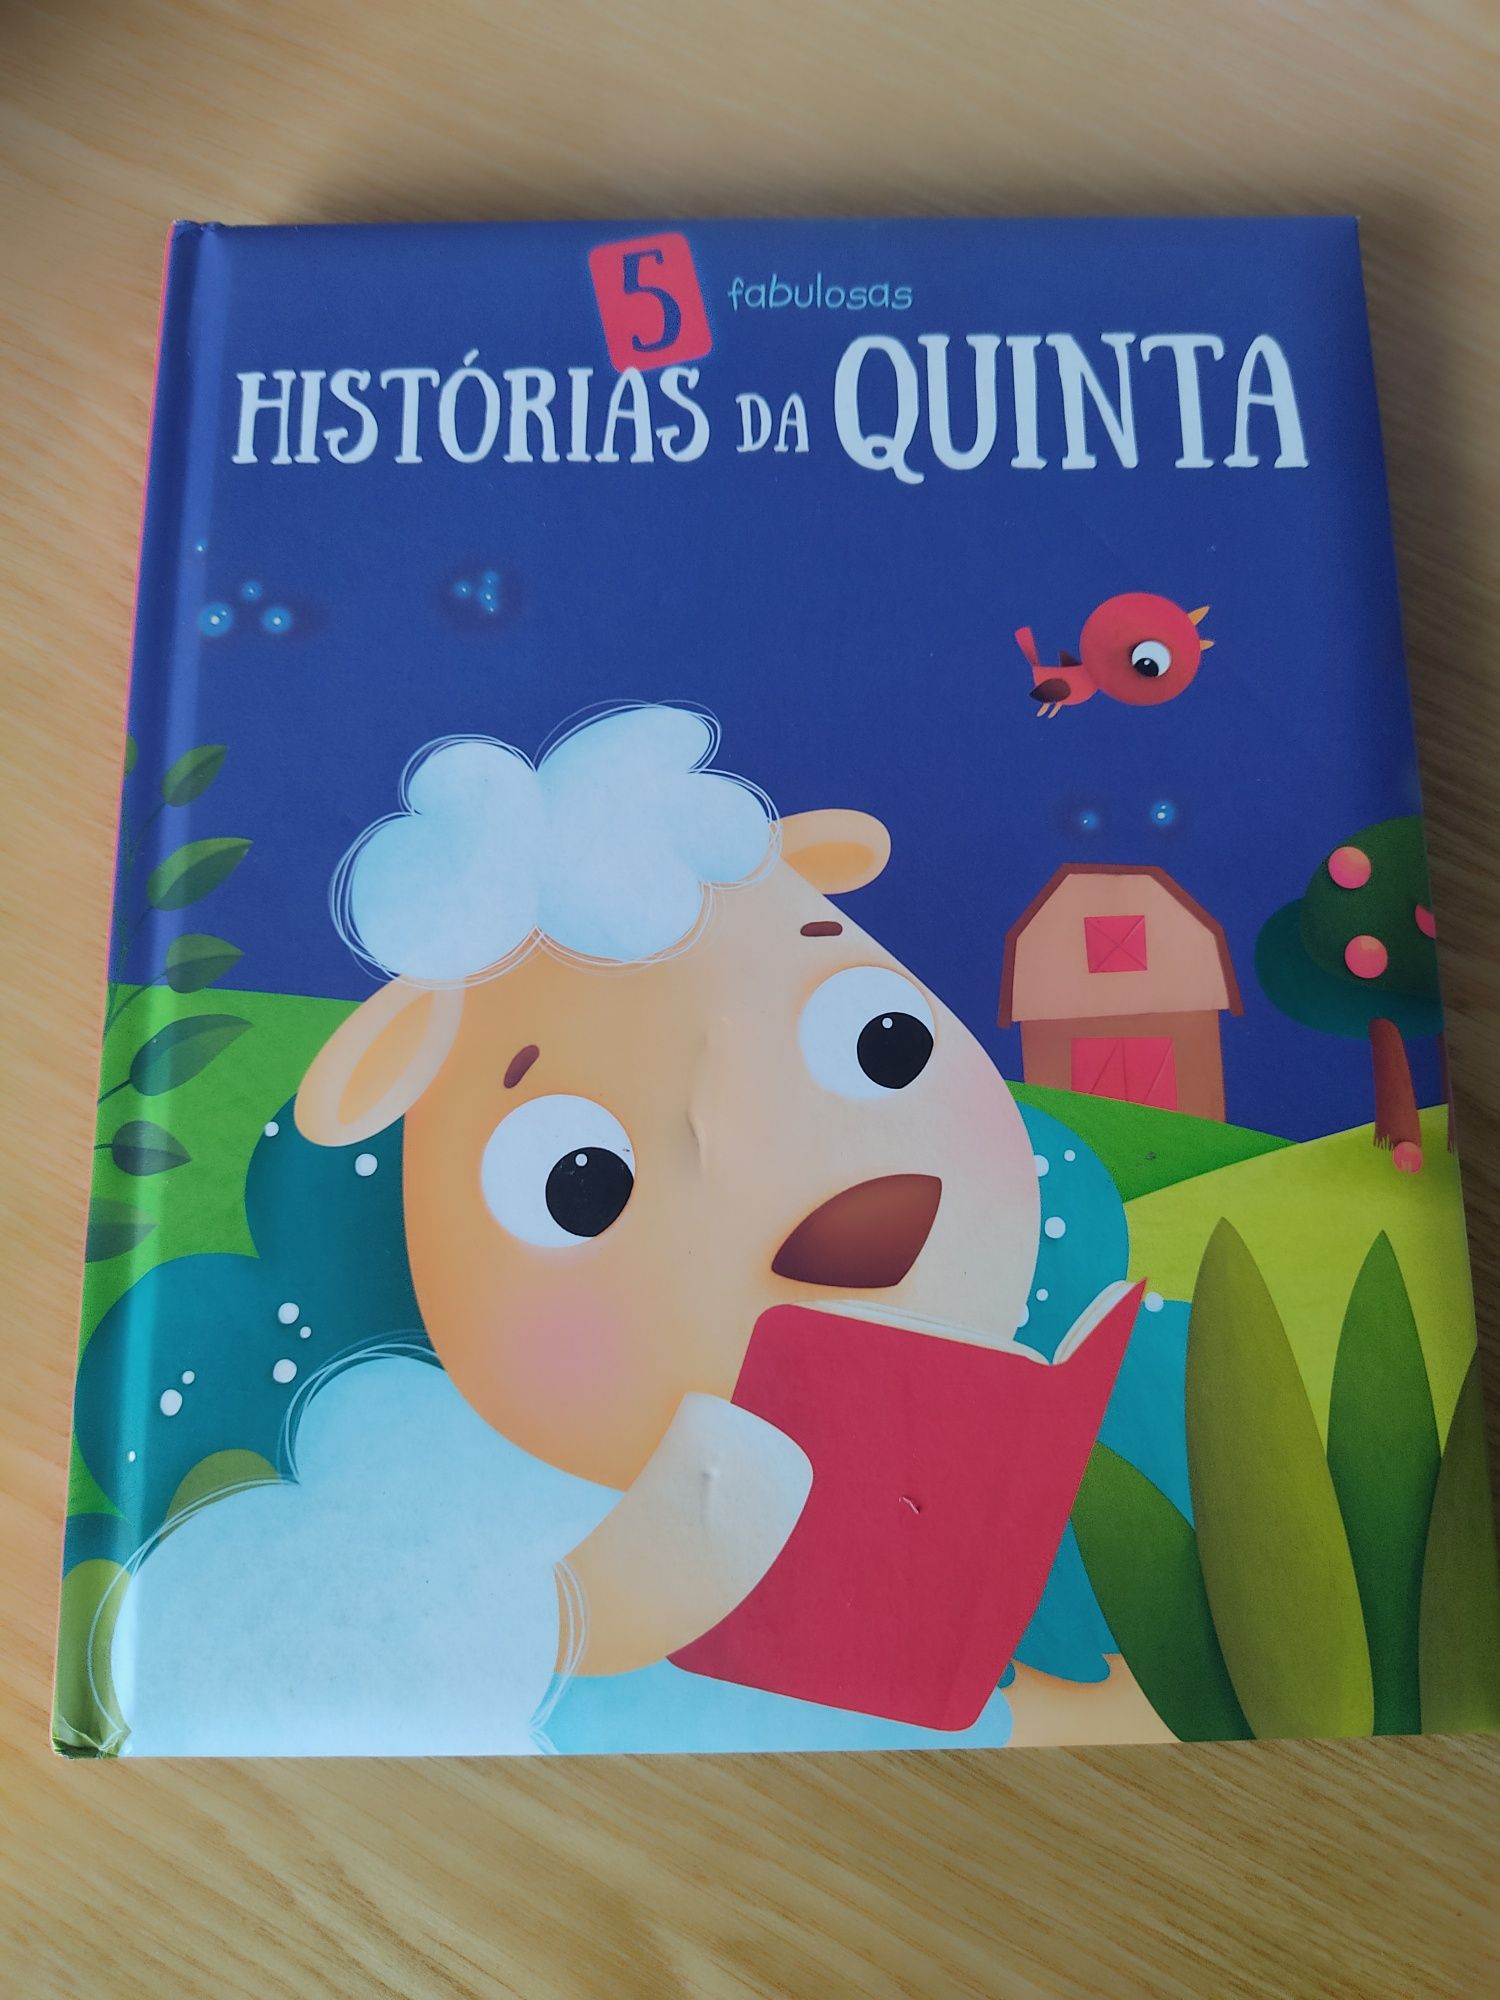 Livro "Histórias da Quinta"